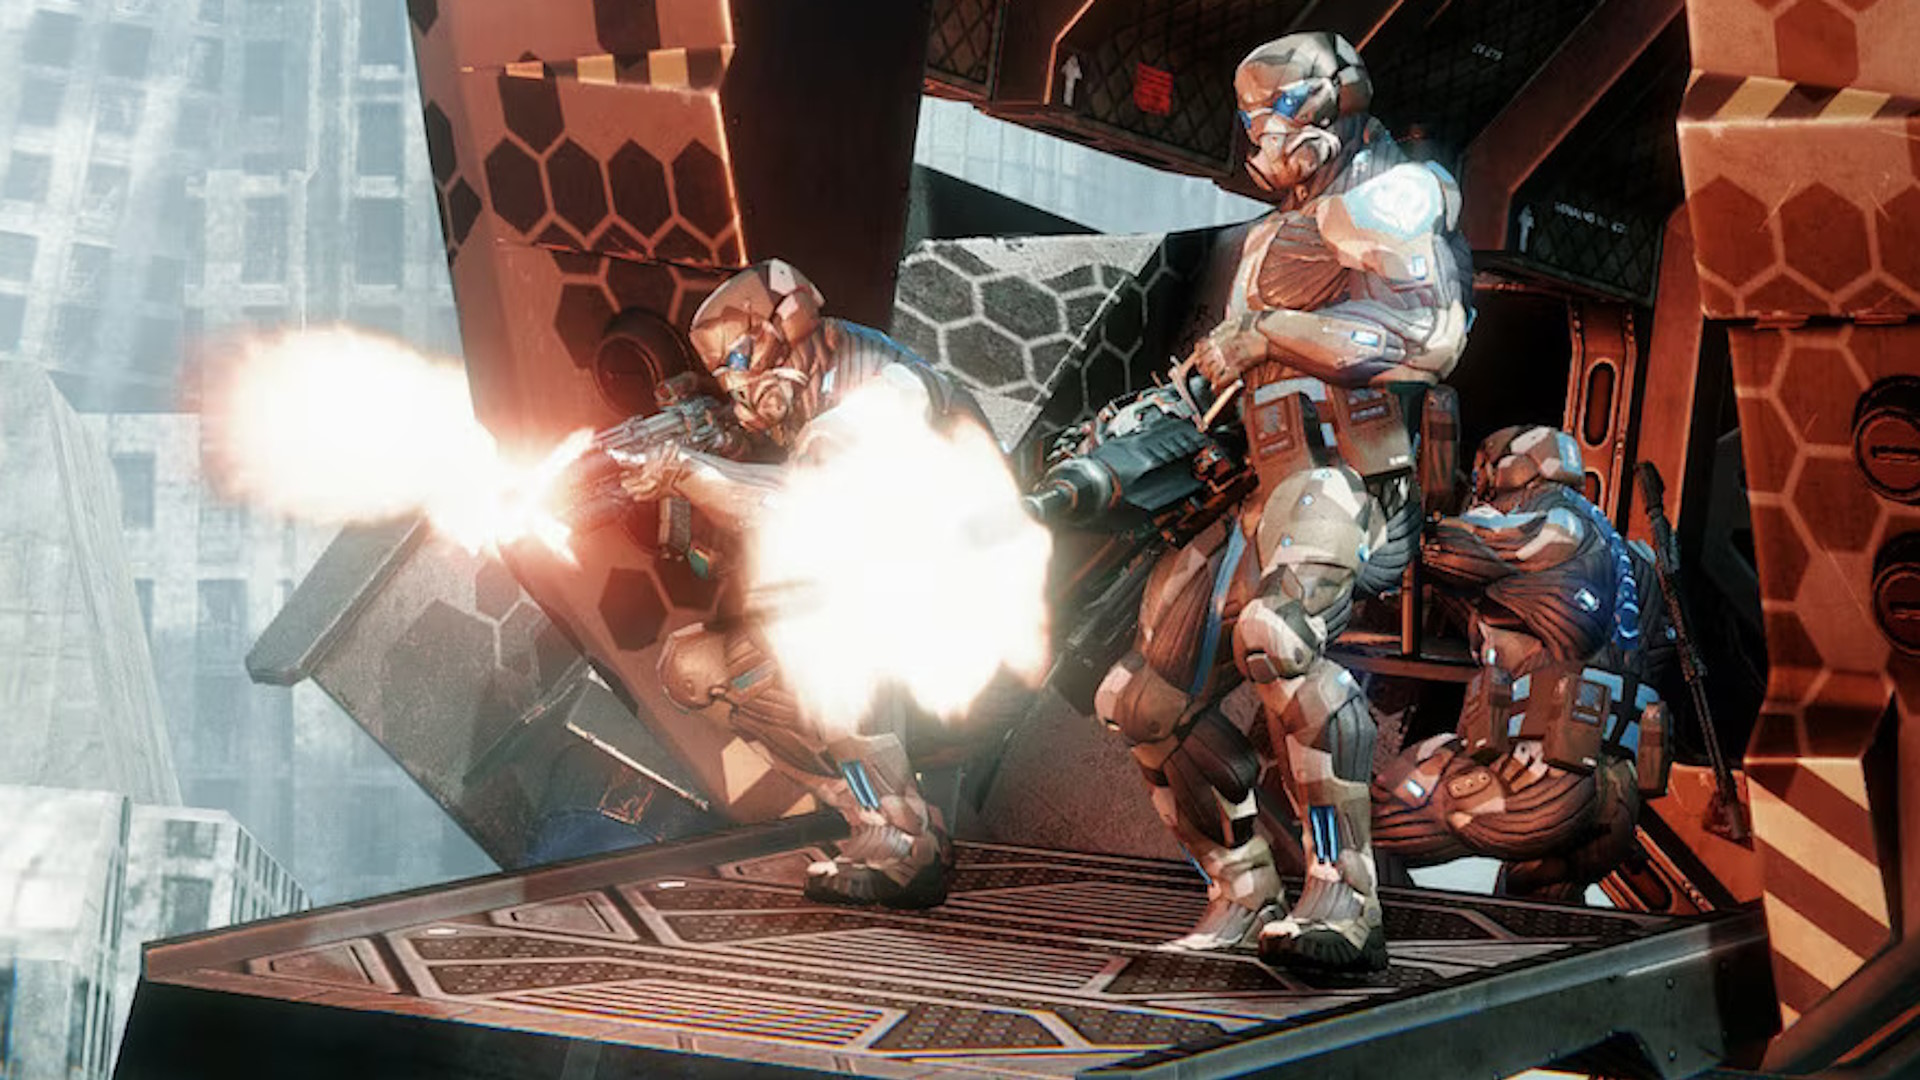  Mirror's Edge Catalyst - Xbox One : Electronic Arts